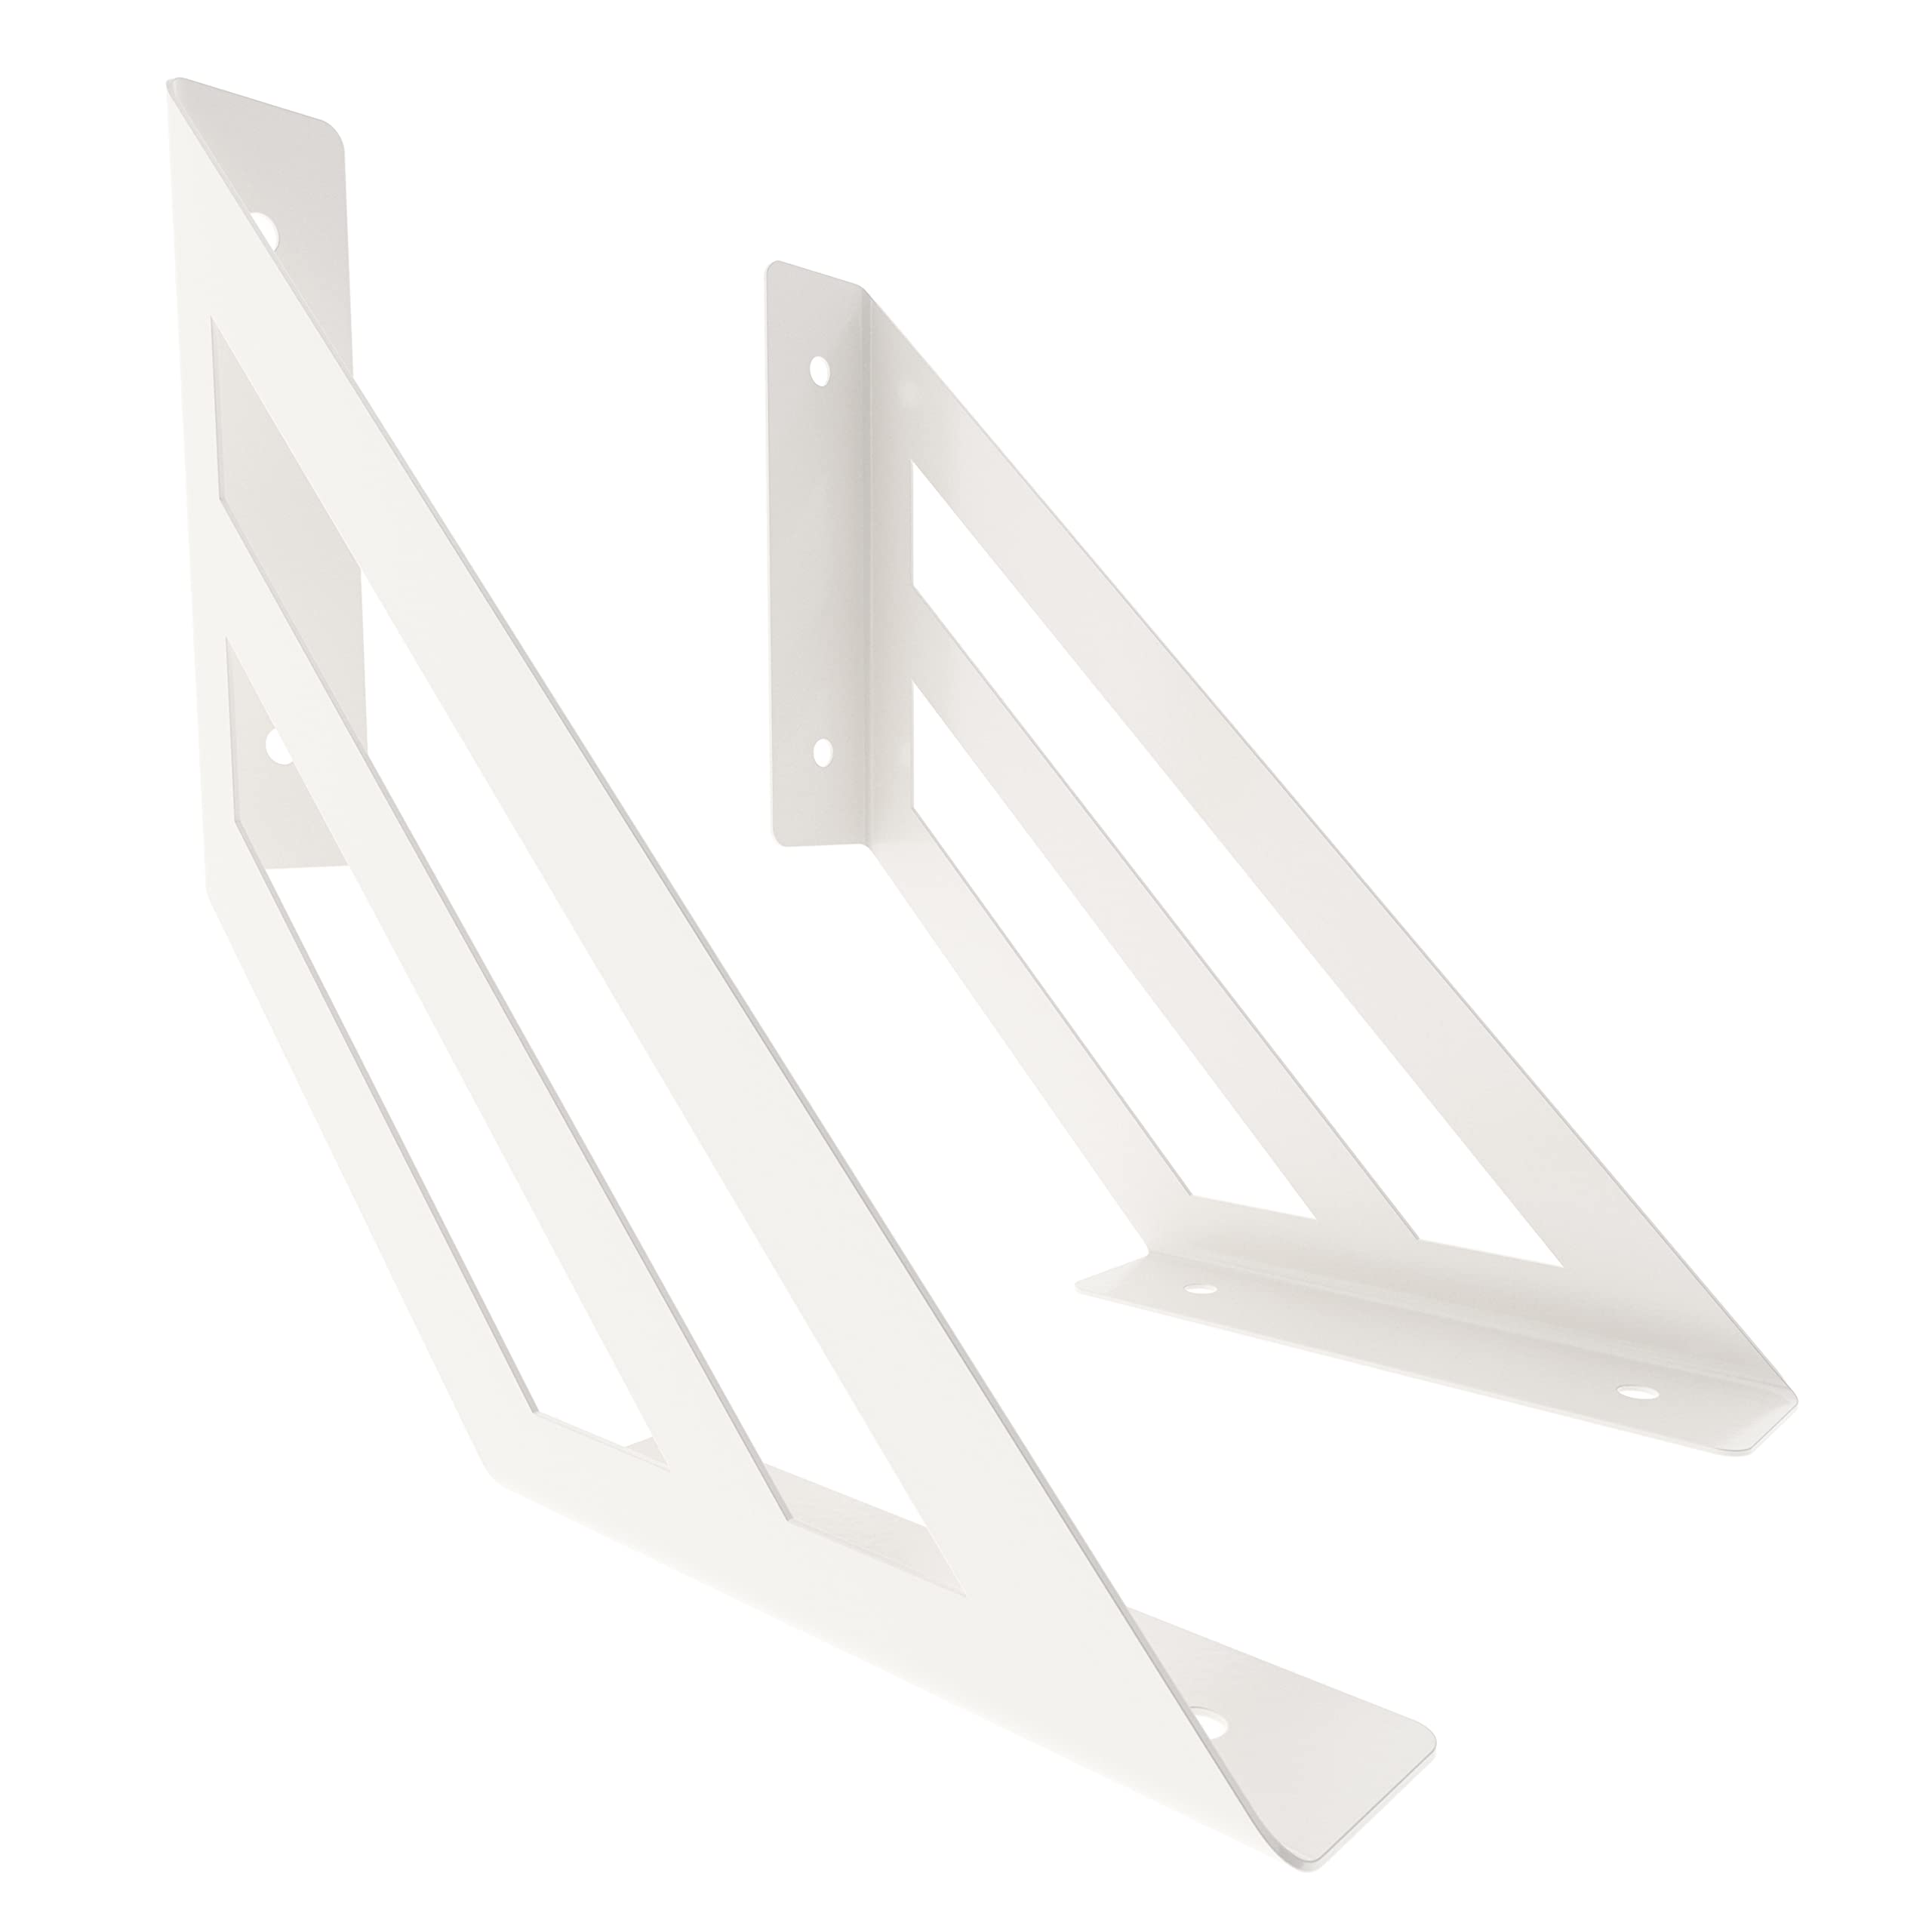 2 x sossai® Design Regalträger Truss | Regalwinkel | Wandhalterung für Regalbrett | Größe: 200 x 200 mm | Farbe: Weiß | Material: Stahl